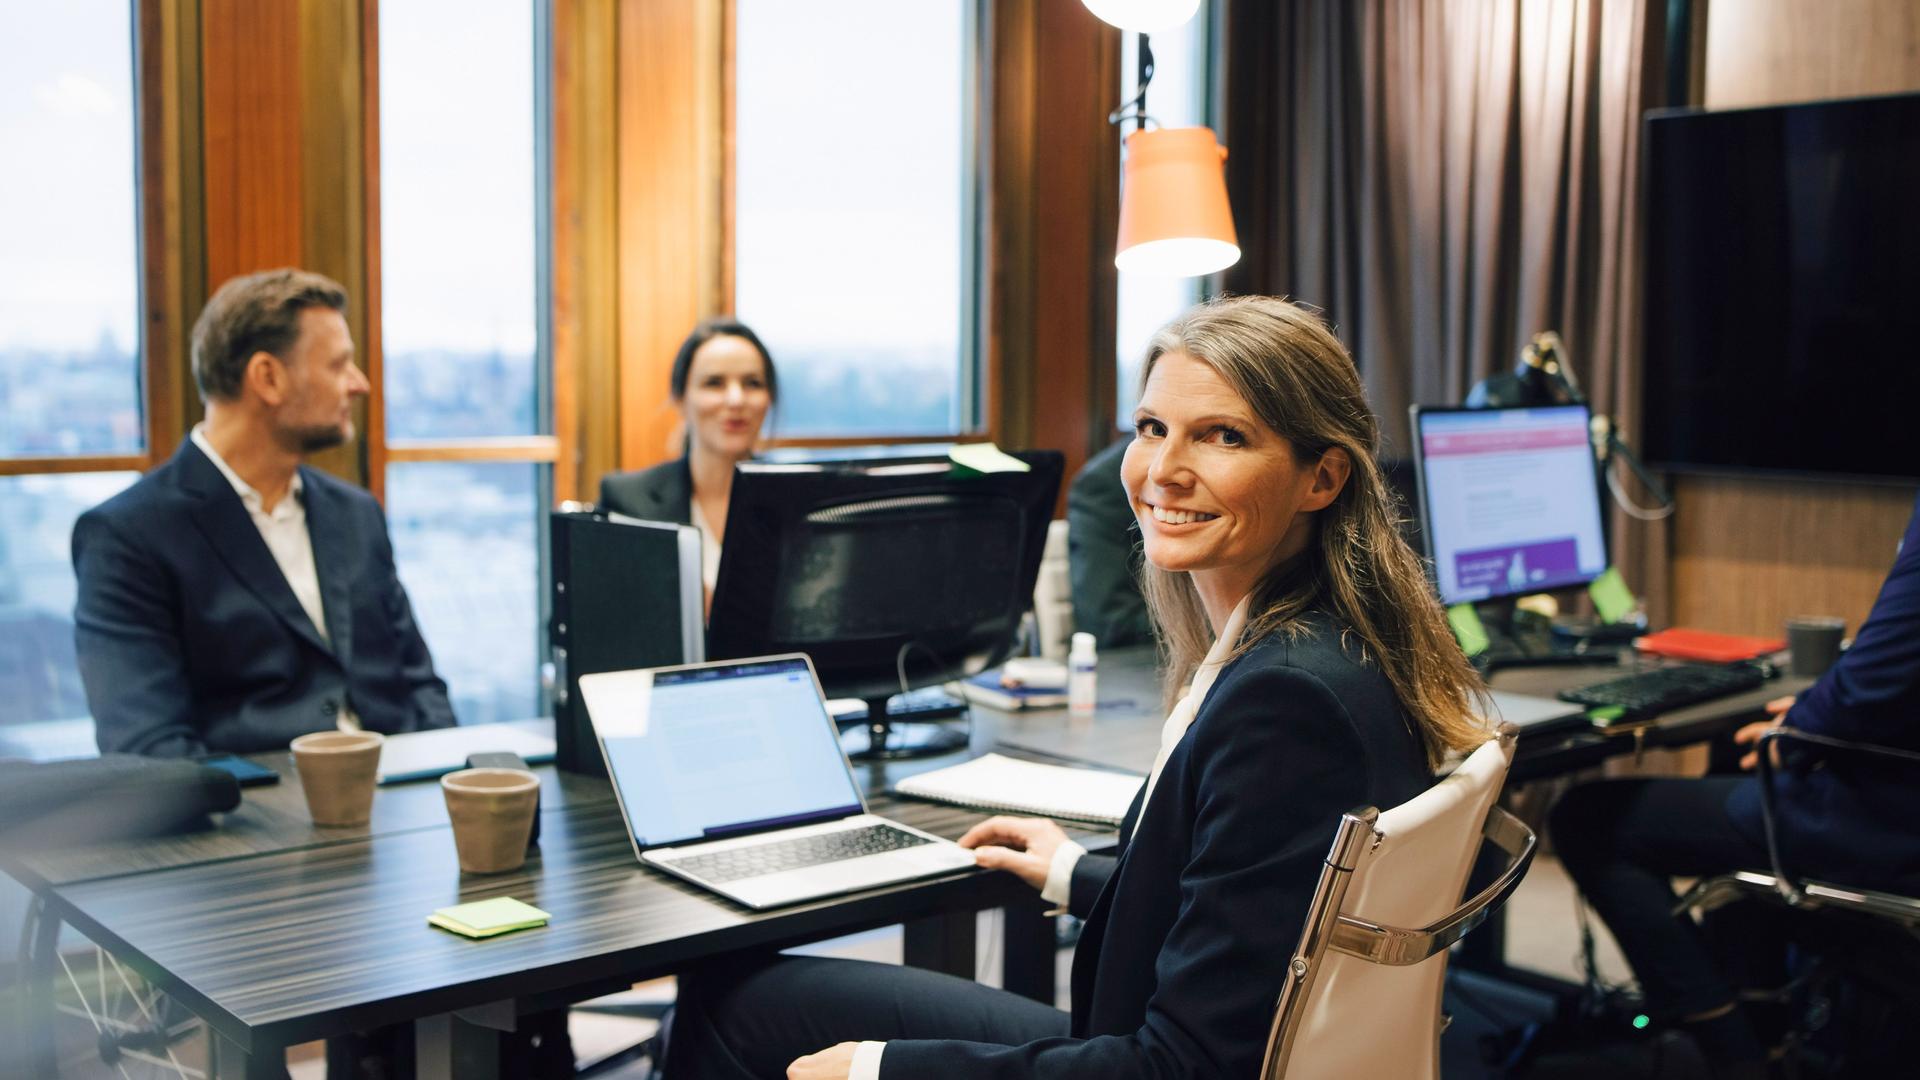 Eine Frau in Business-Kleidung dreht sich während eines Meetings mit drei Männern und einer Frau in einem Konferenzraum lächelnd in die Kamera. Sie hat einen aufgeklappten Laptop vor sich.